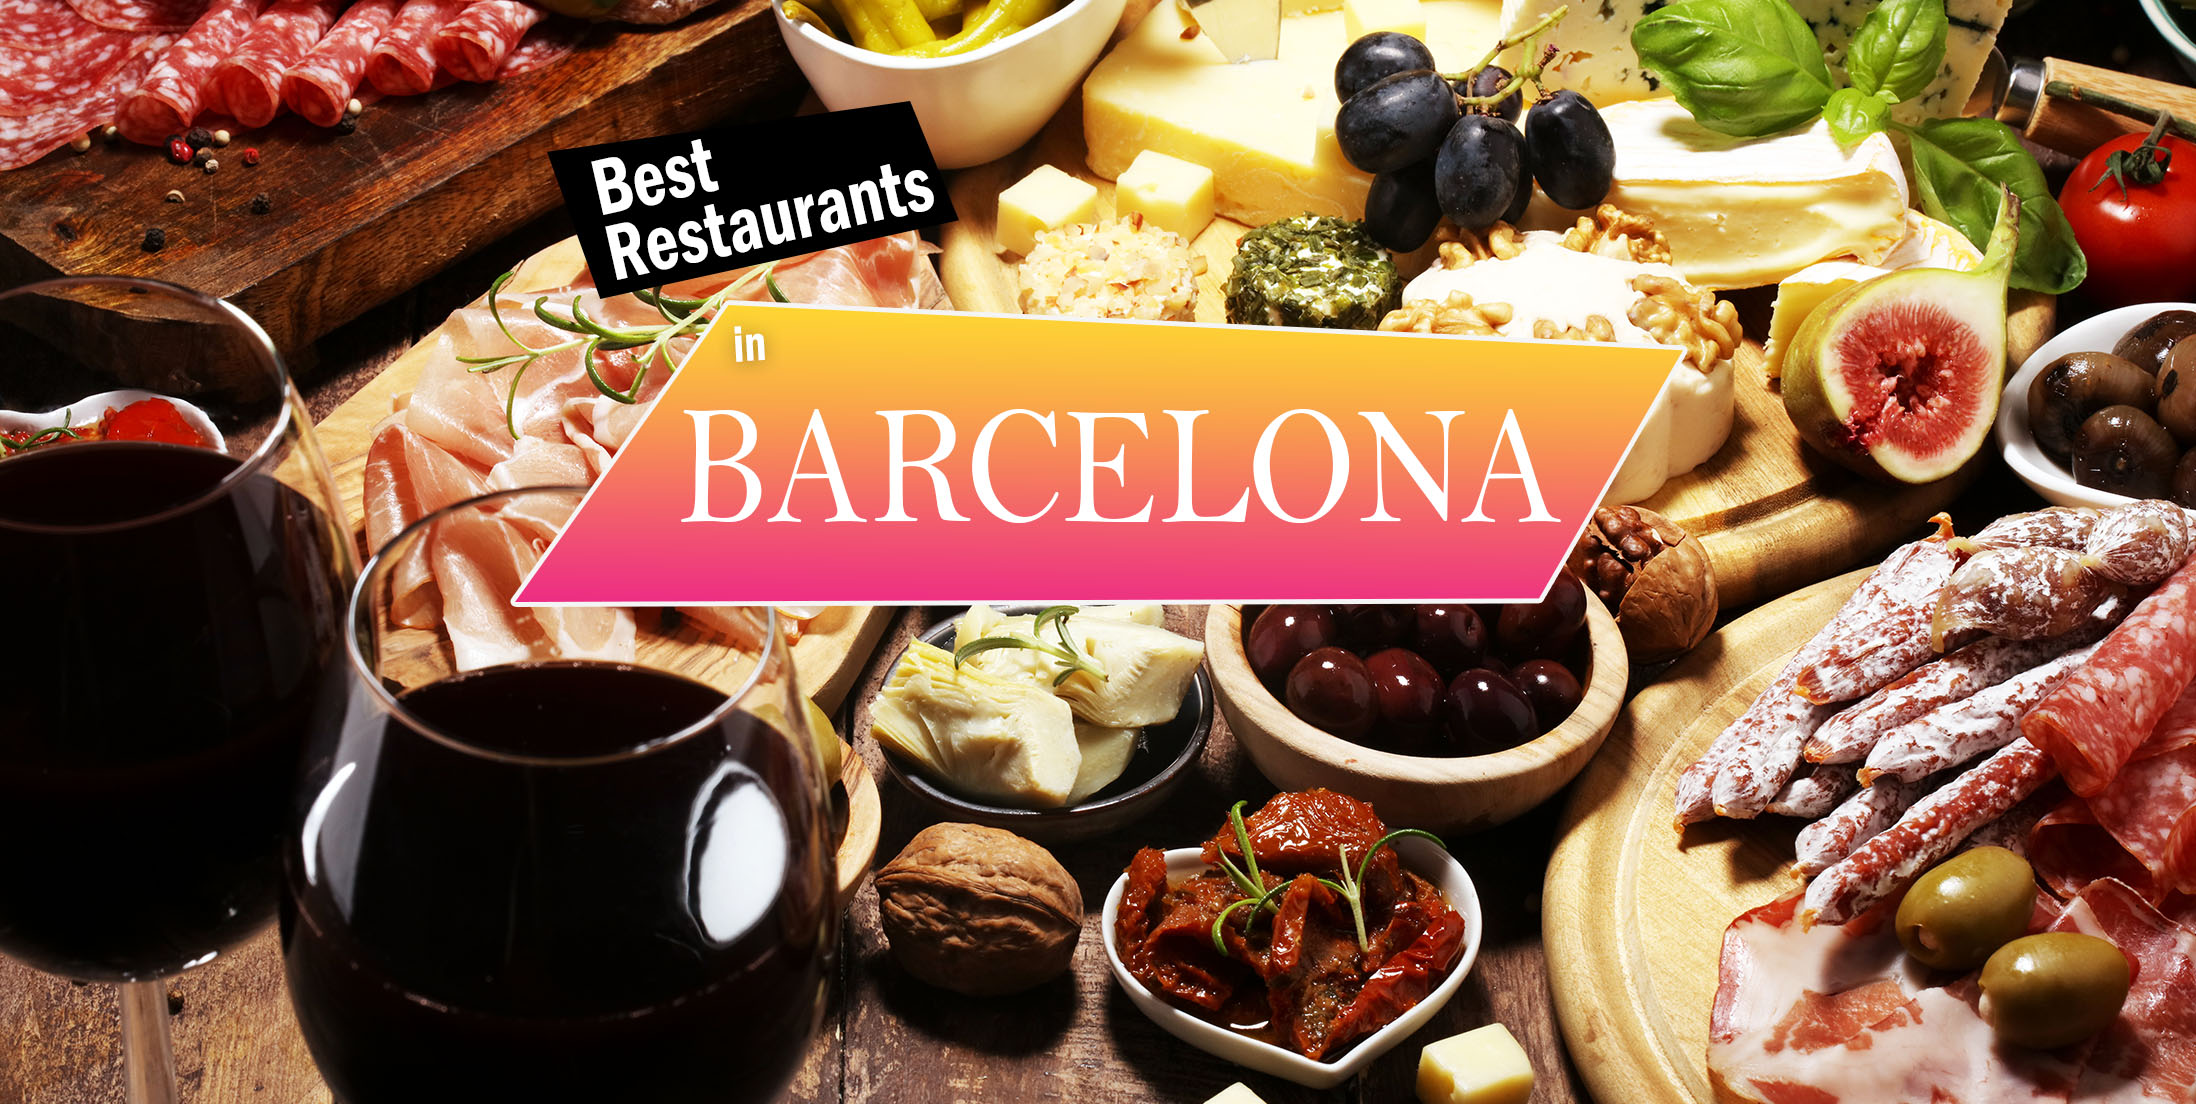 Best Restaurants in Barcelona